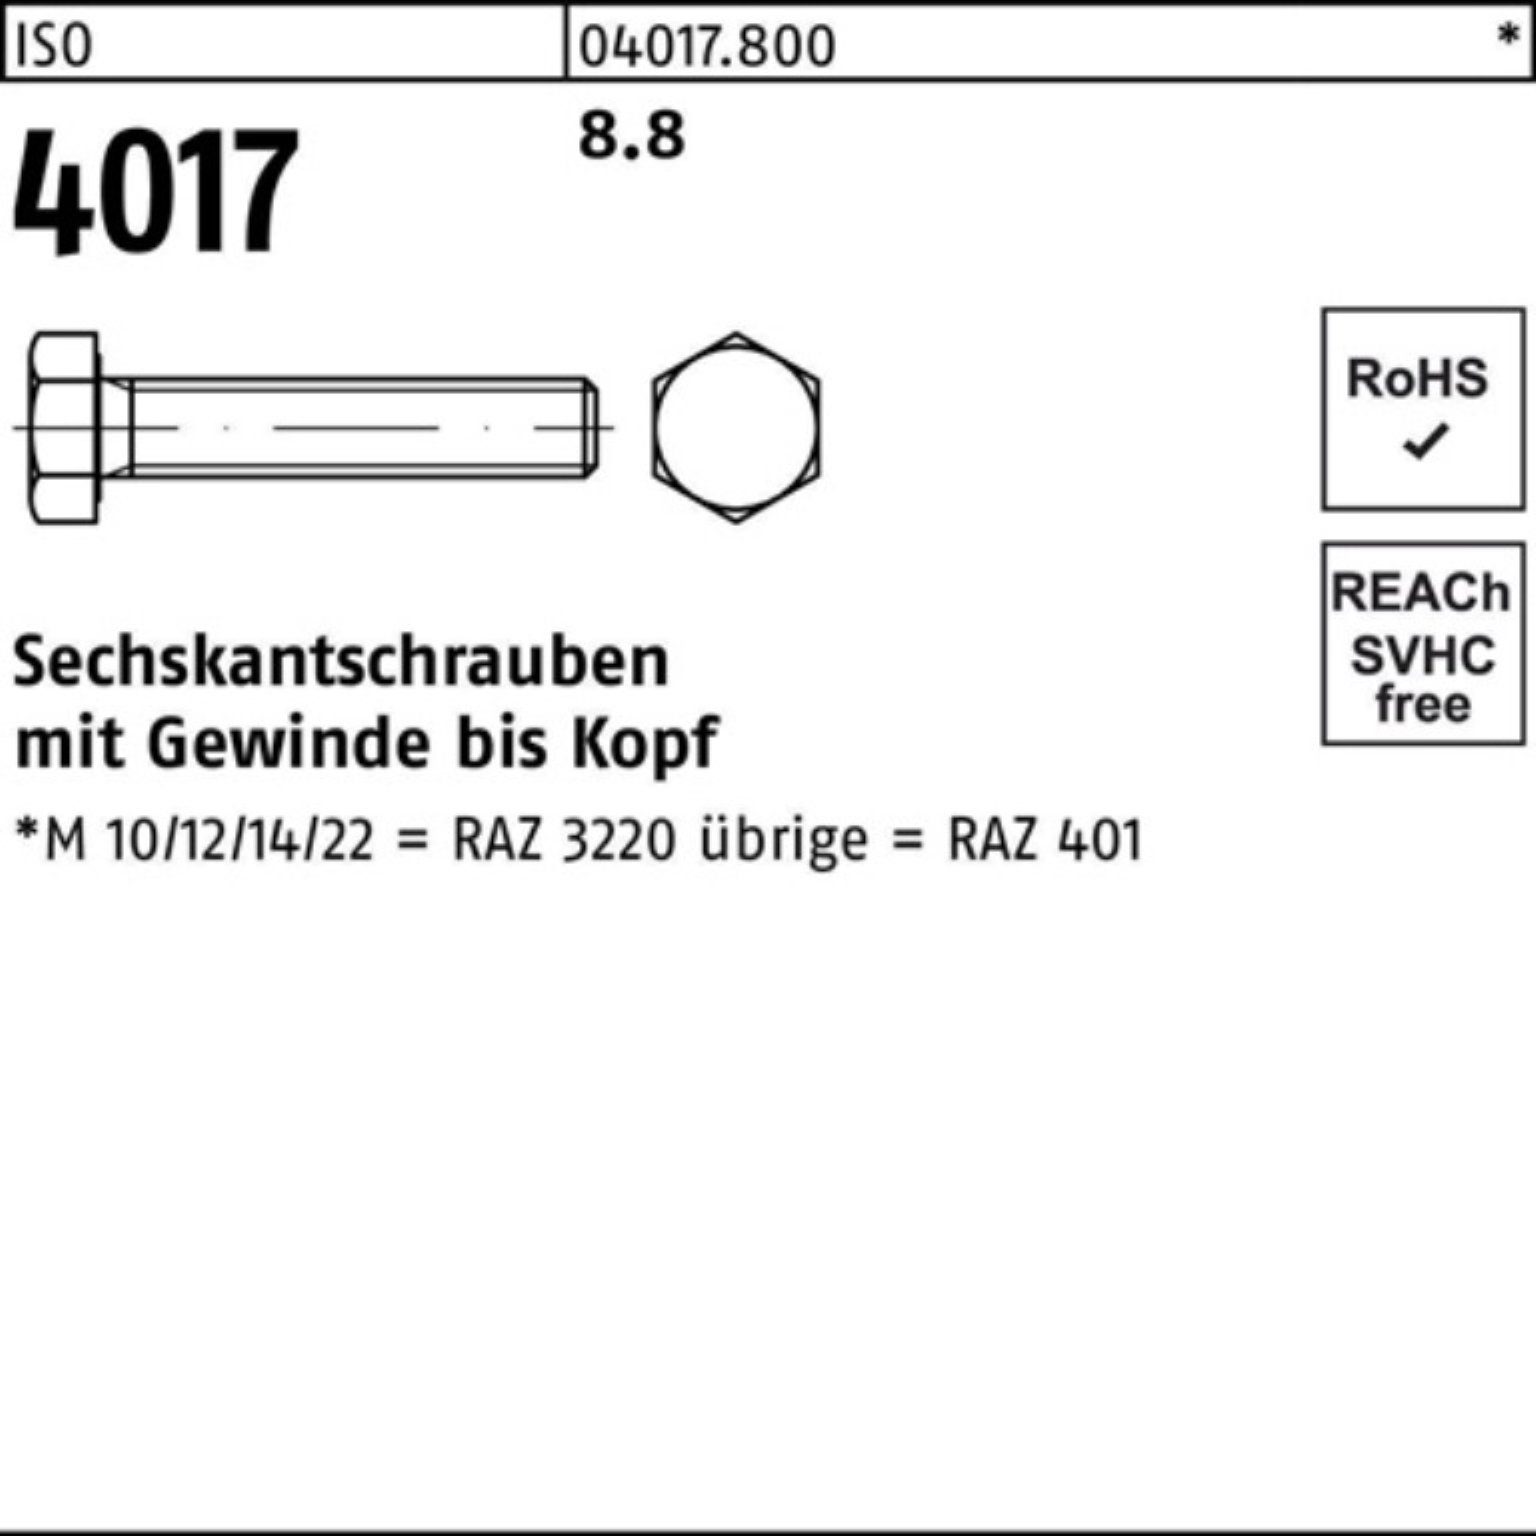 Sechskantschraube 50 M16x 4017 Pack Stück Sechskantschraube ISO 8.8 401 ISO 100er 35 Bufab VG